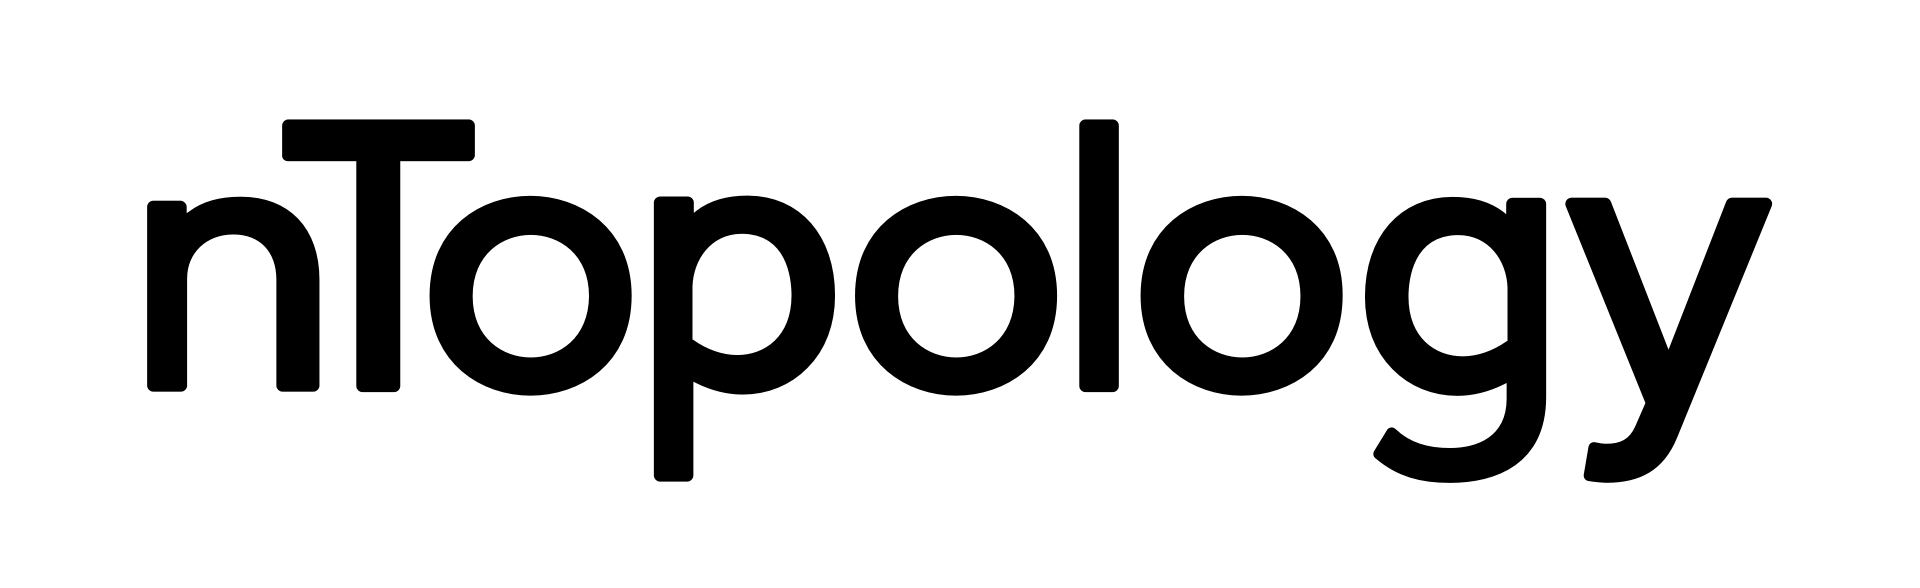 ntopology logo black.png